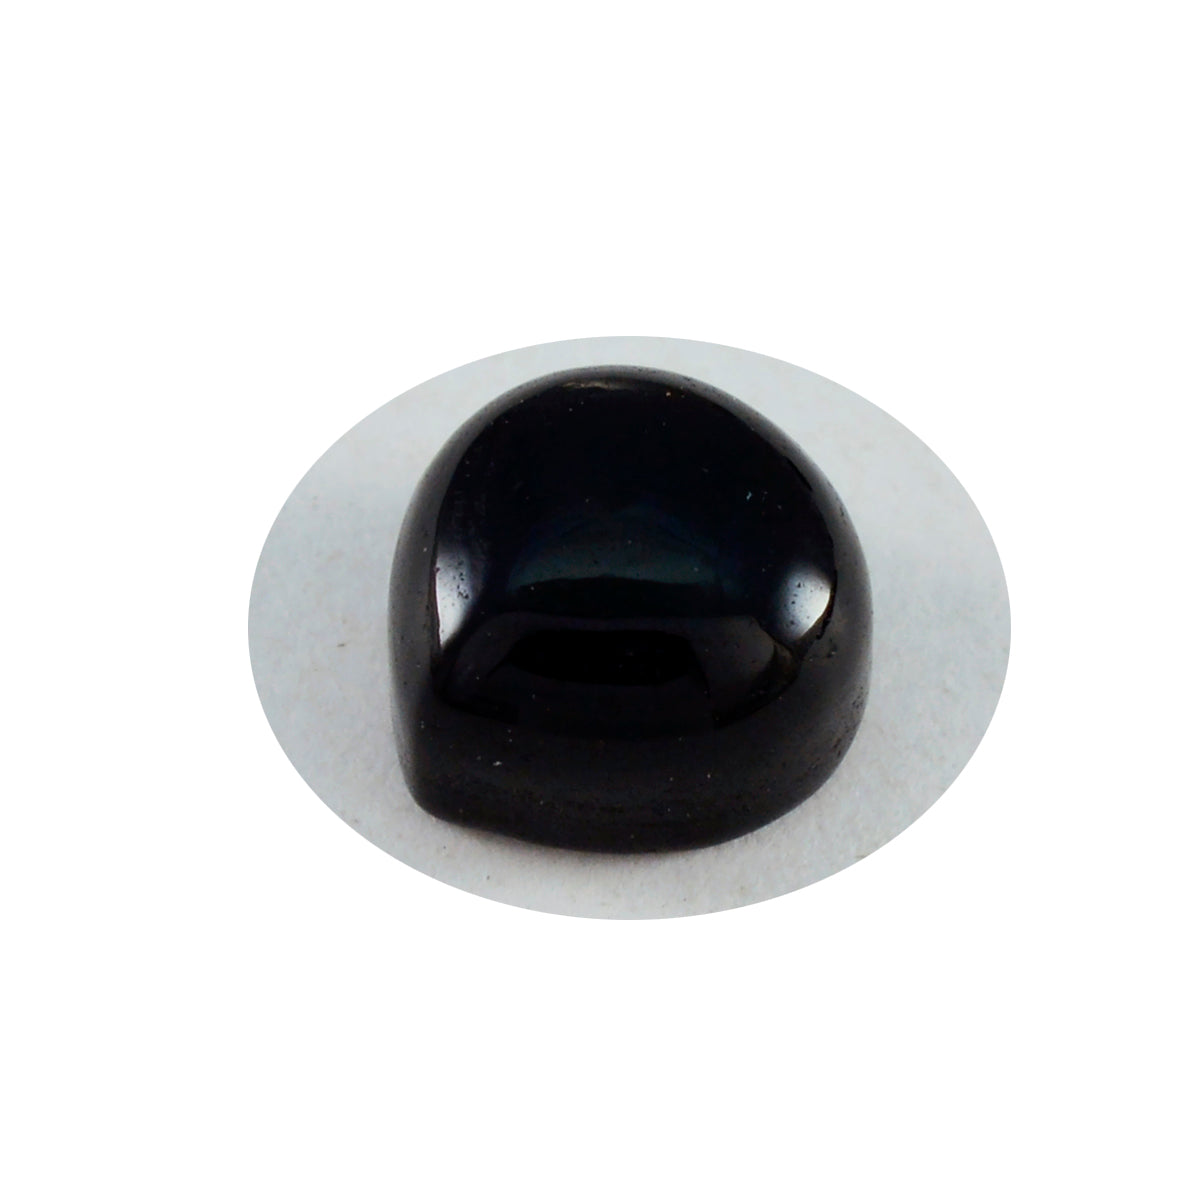 riyogems 1 st svart onyx cabochon 11x11 mm hjärtform fantastisk kvalitetsädelsten